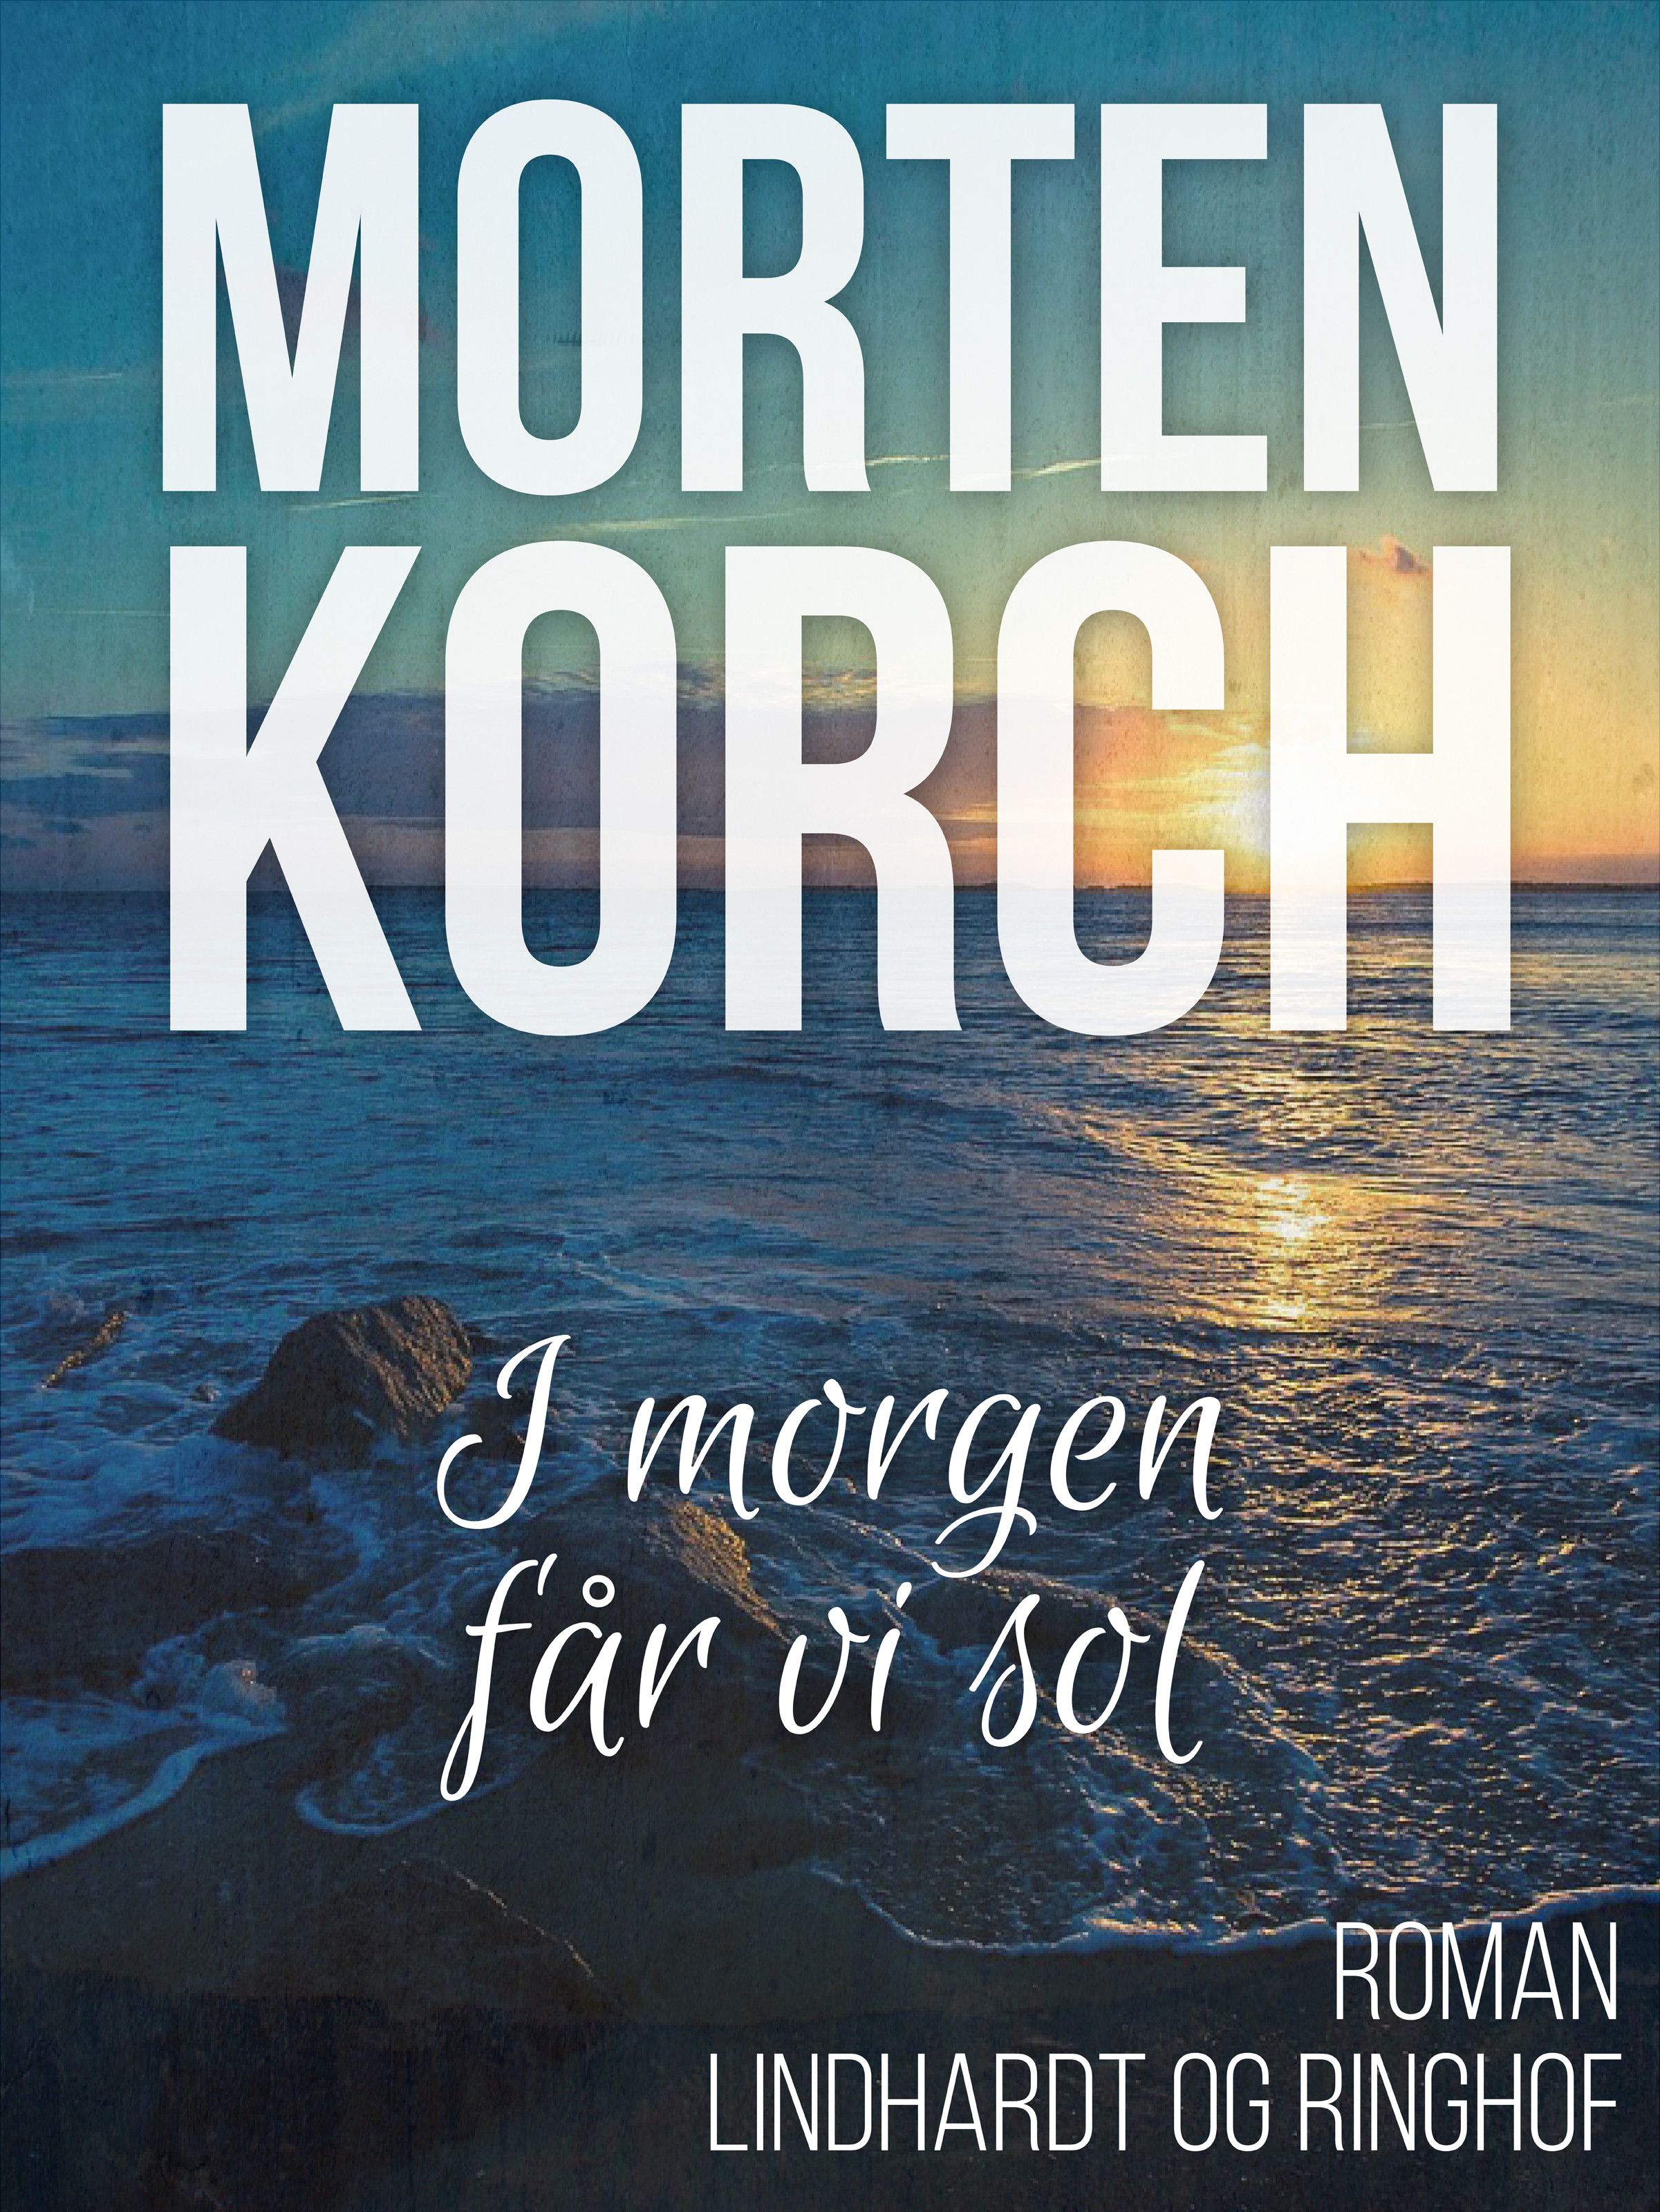 I morgen får vi sol, audiobook by Morten Korch